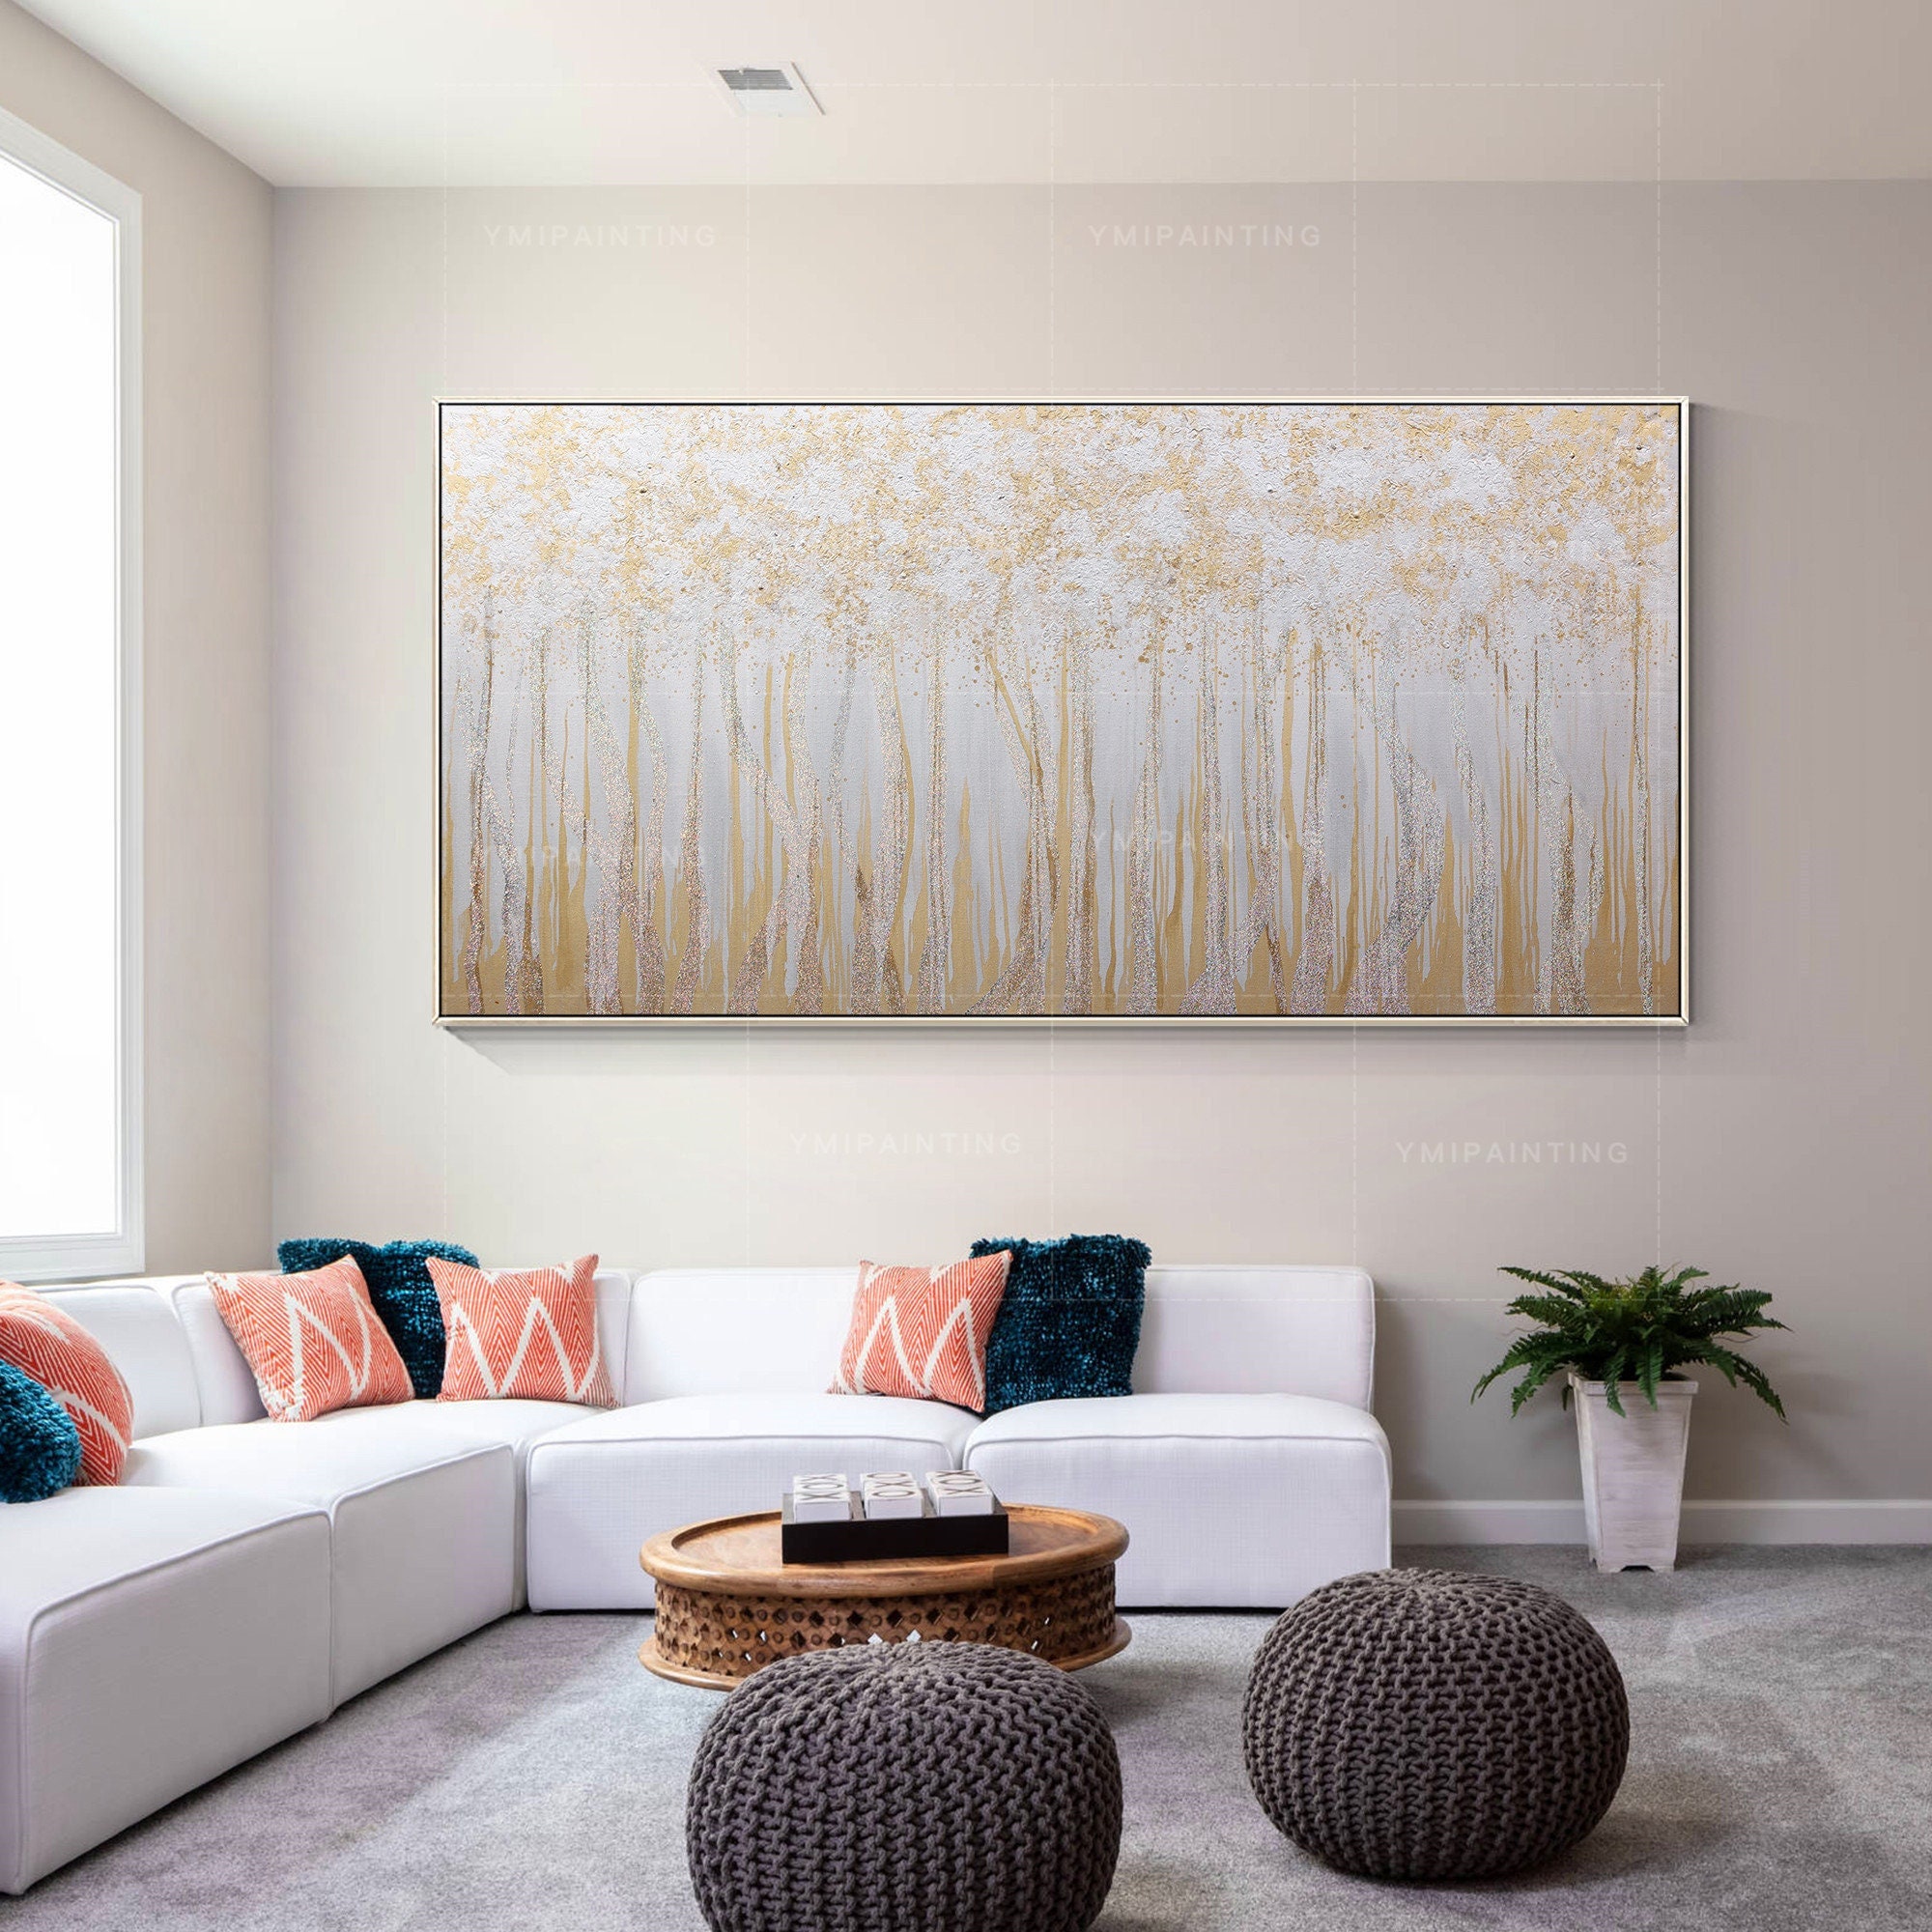 Framed Gold Glitter Abstract Enhanced Canvas Wall Art, 30x40